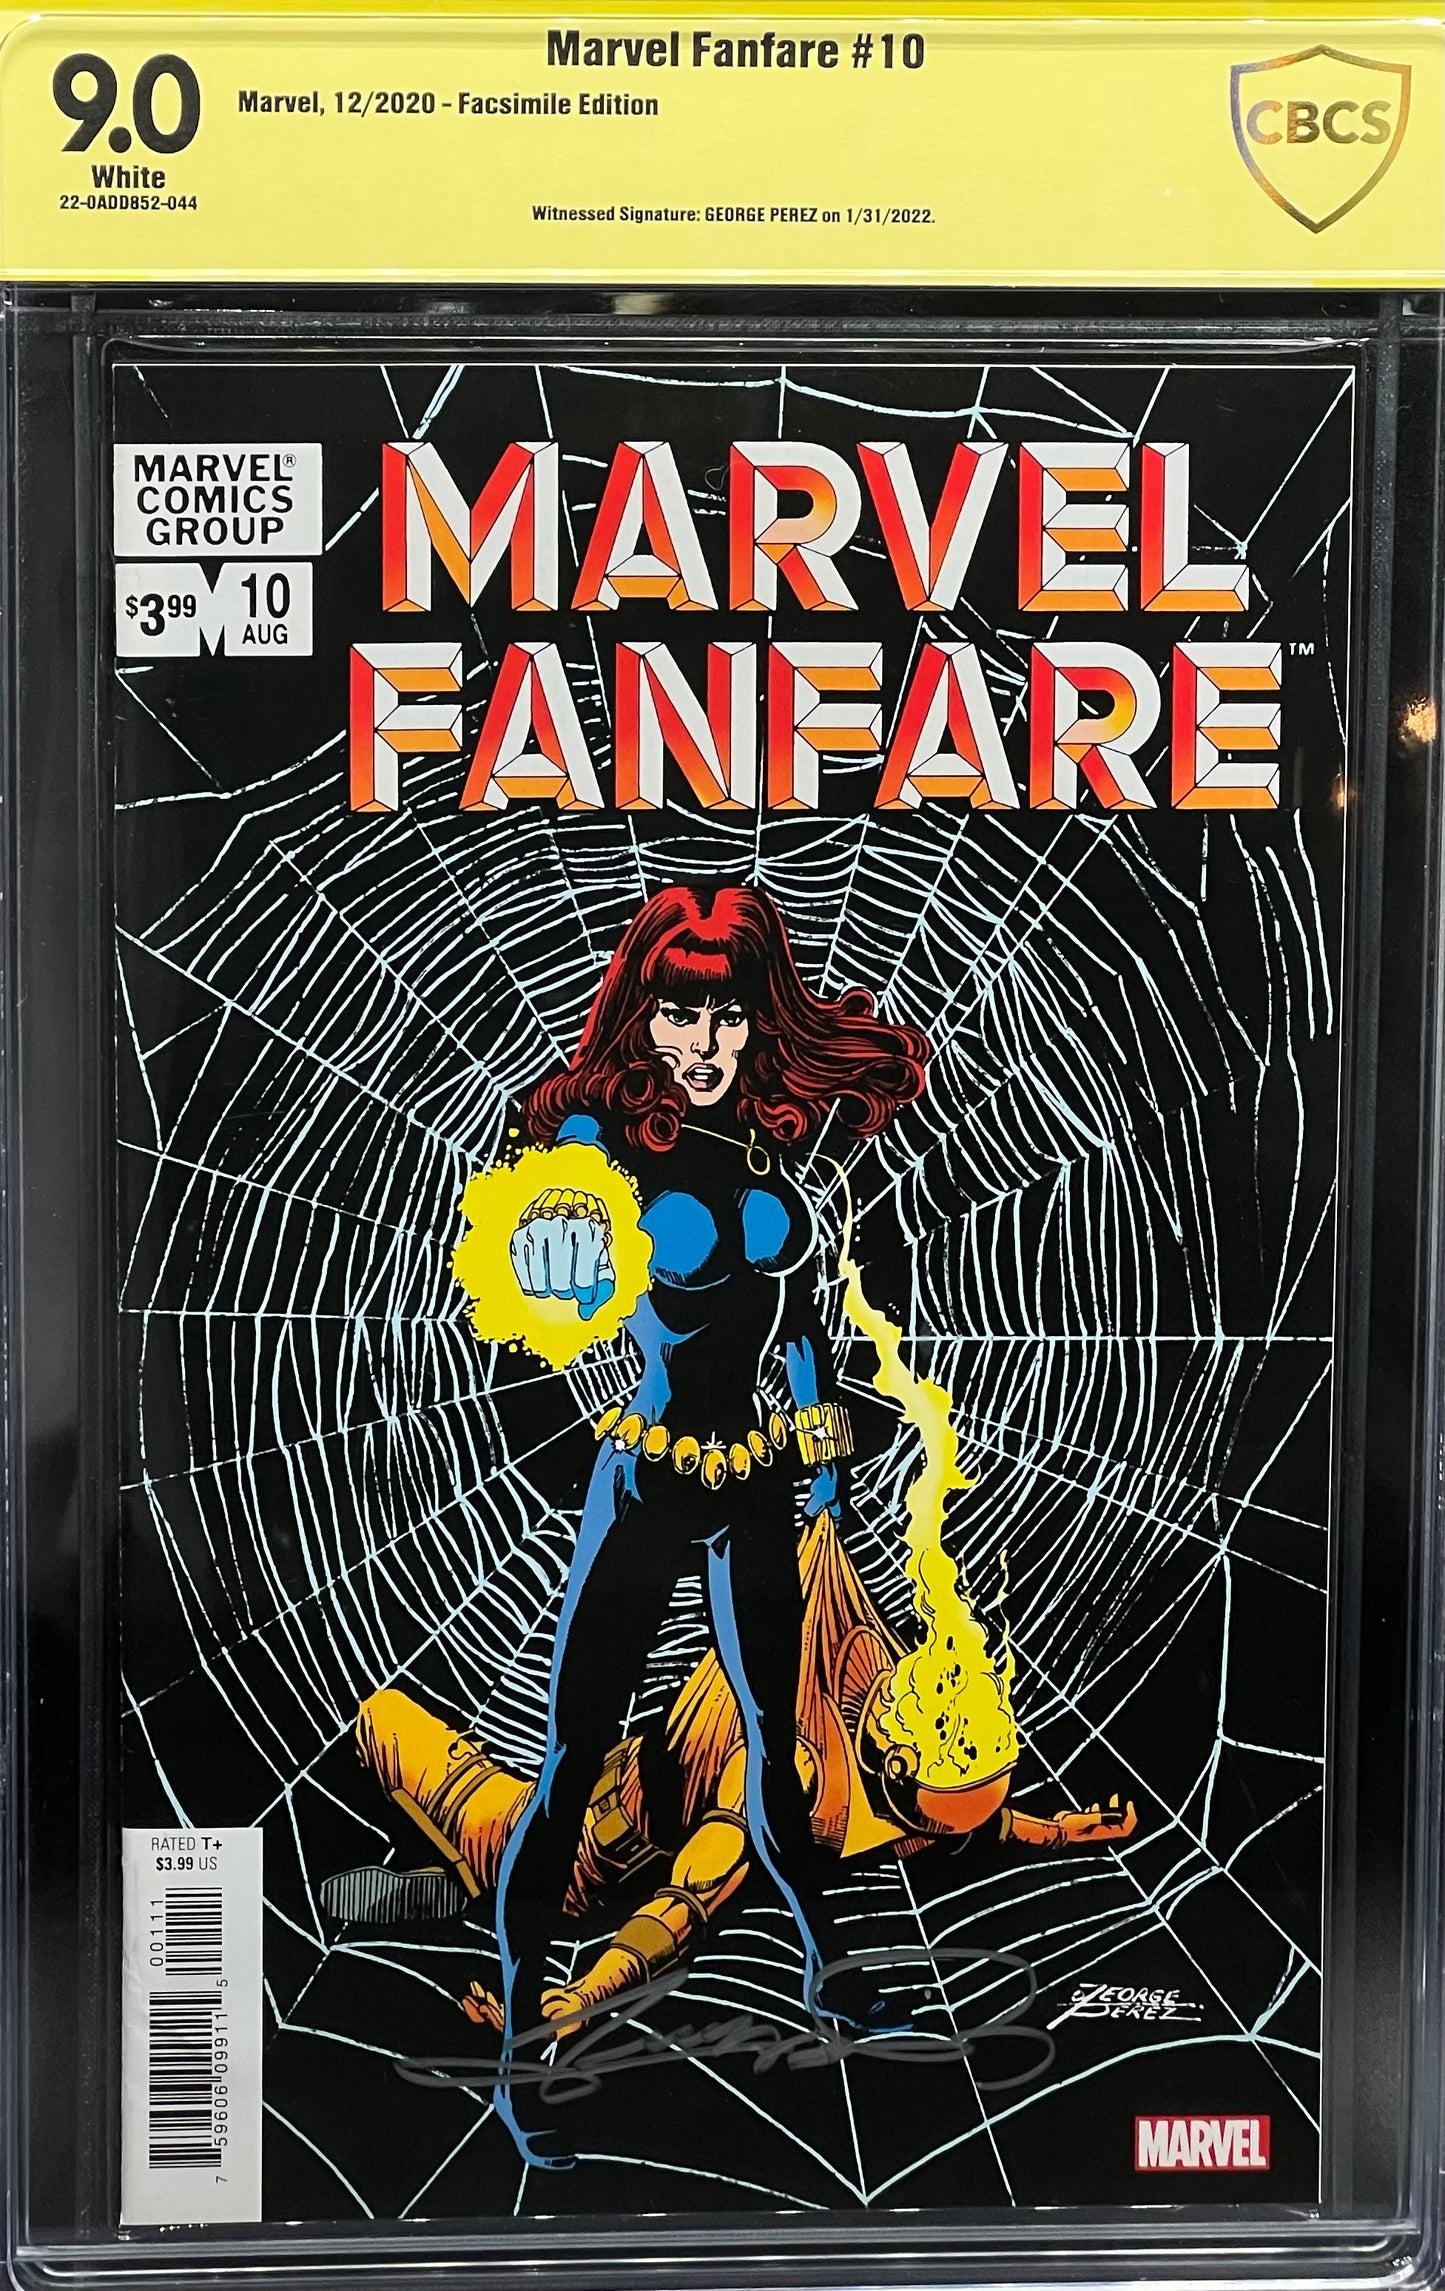 Marvel Fanfare #10 Facsimile Edition CBCS 9.0 Yellow Label George Perez